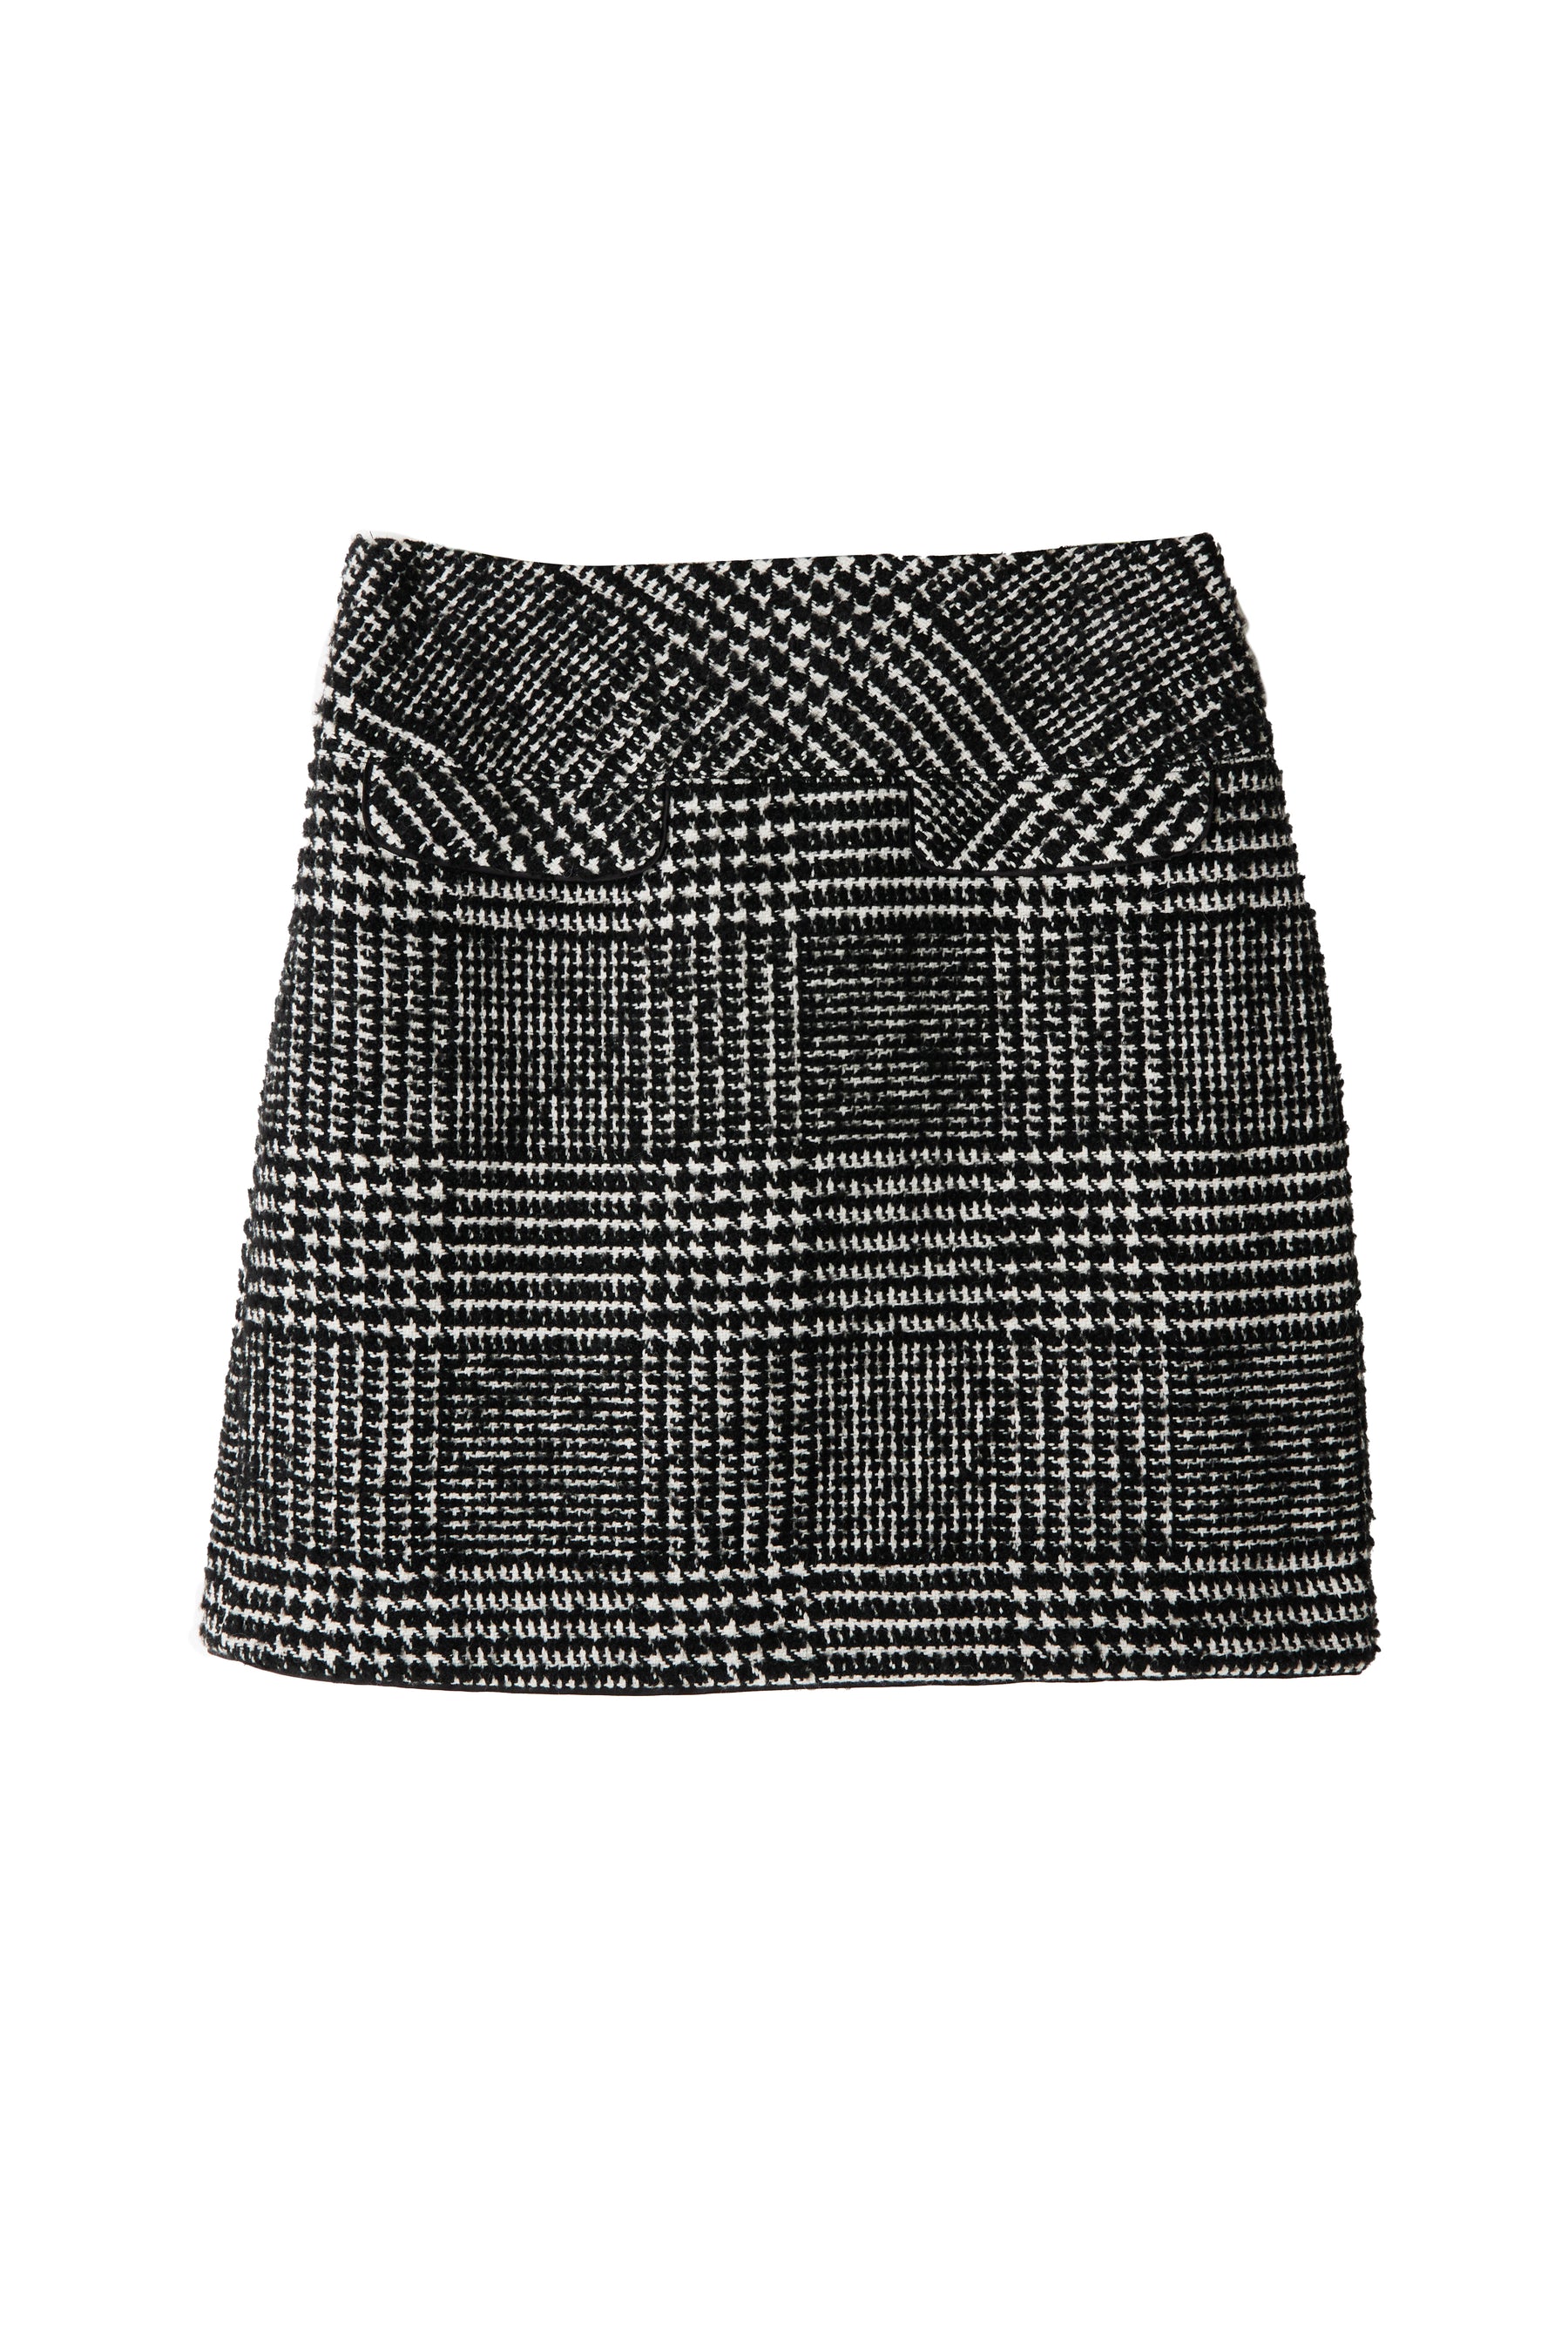 Herlipto Hemingway Check Tweed Skirt-